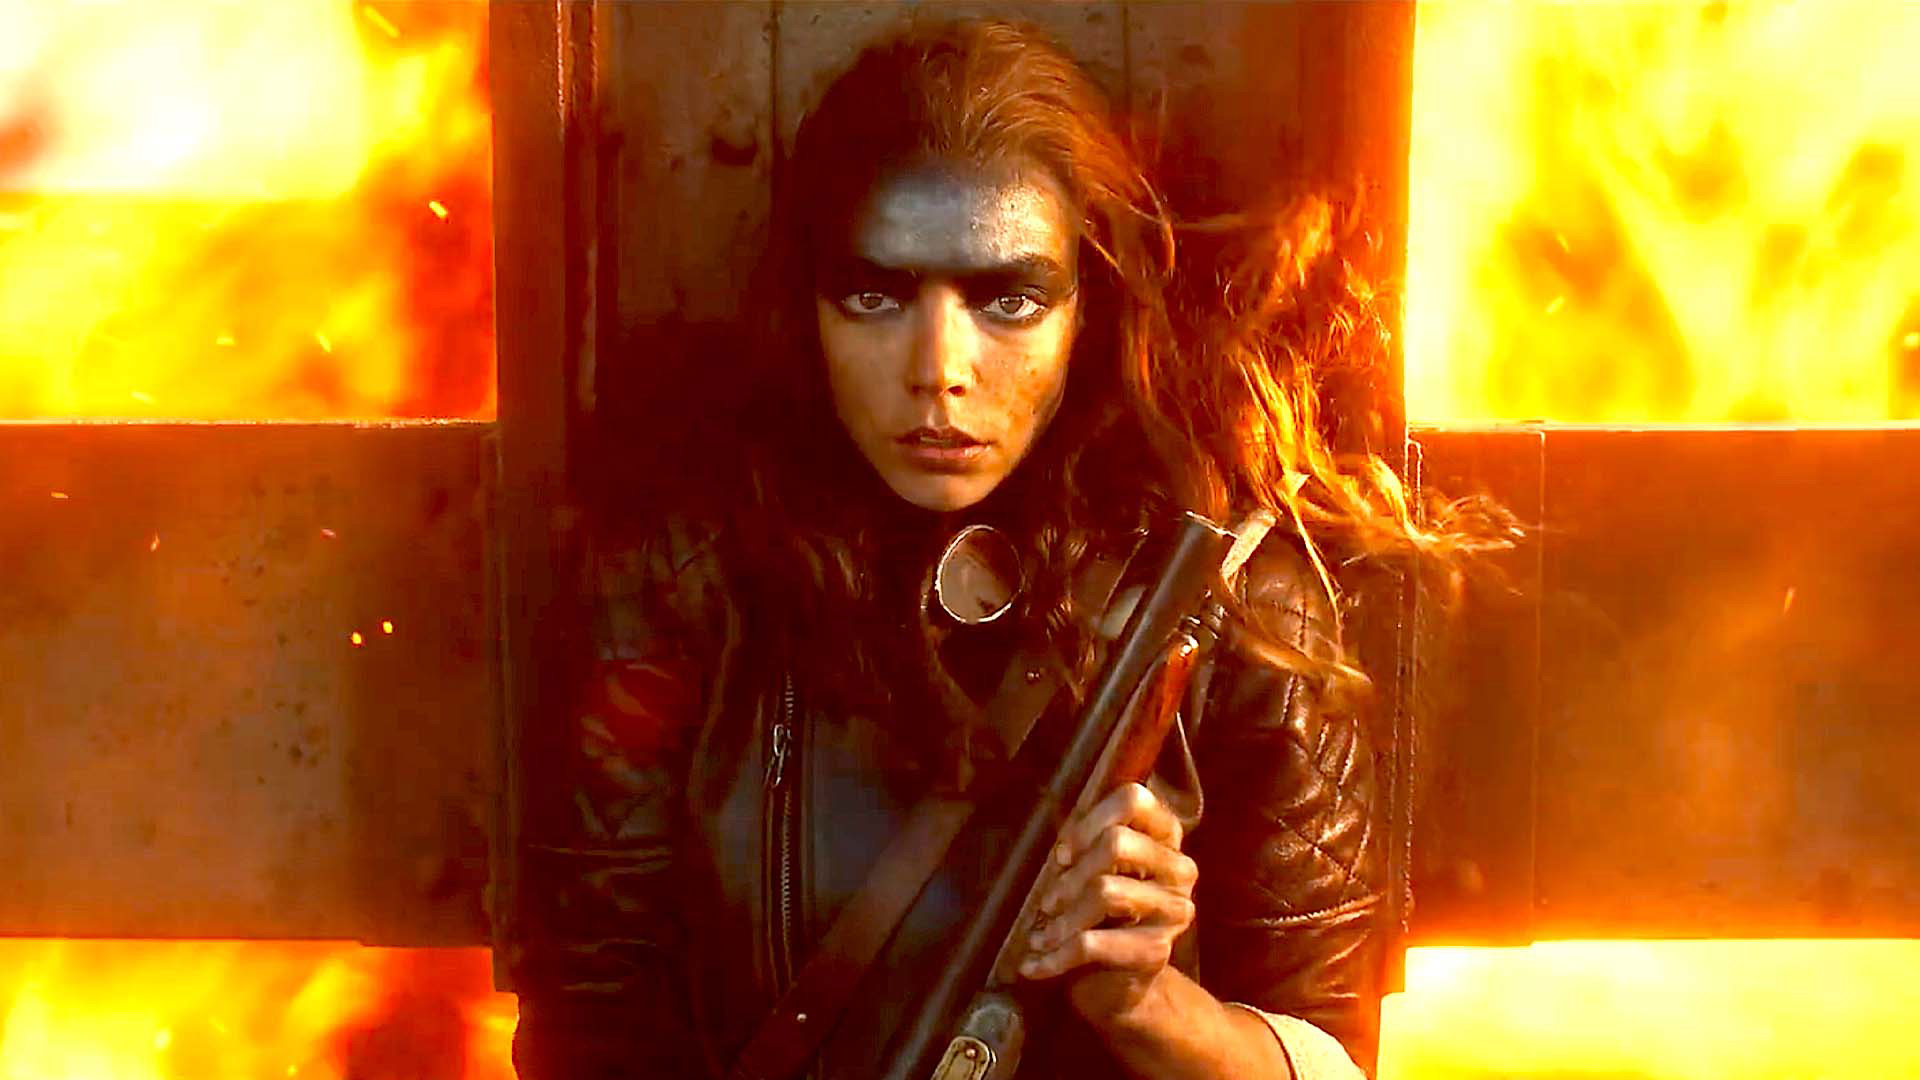 Awesome Trailer for Furiosa: A Mad Max Saga